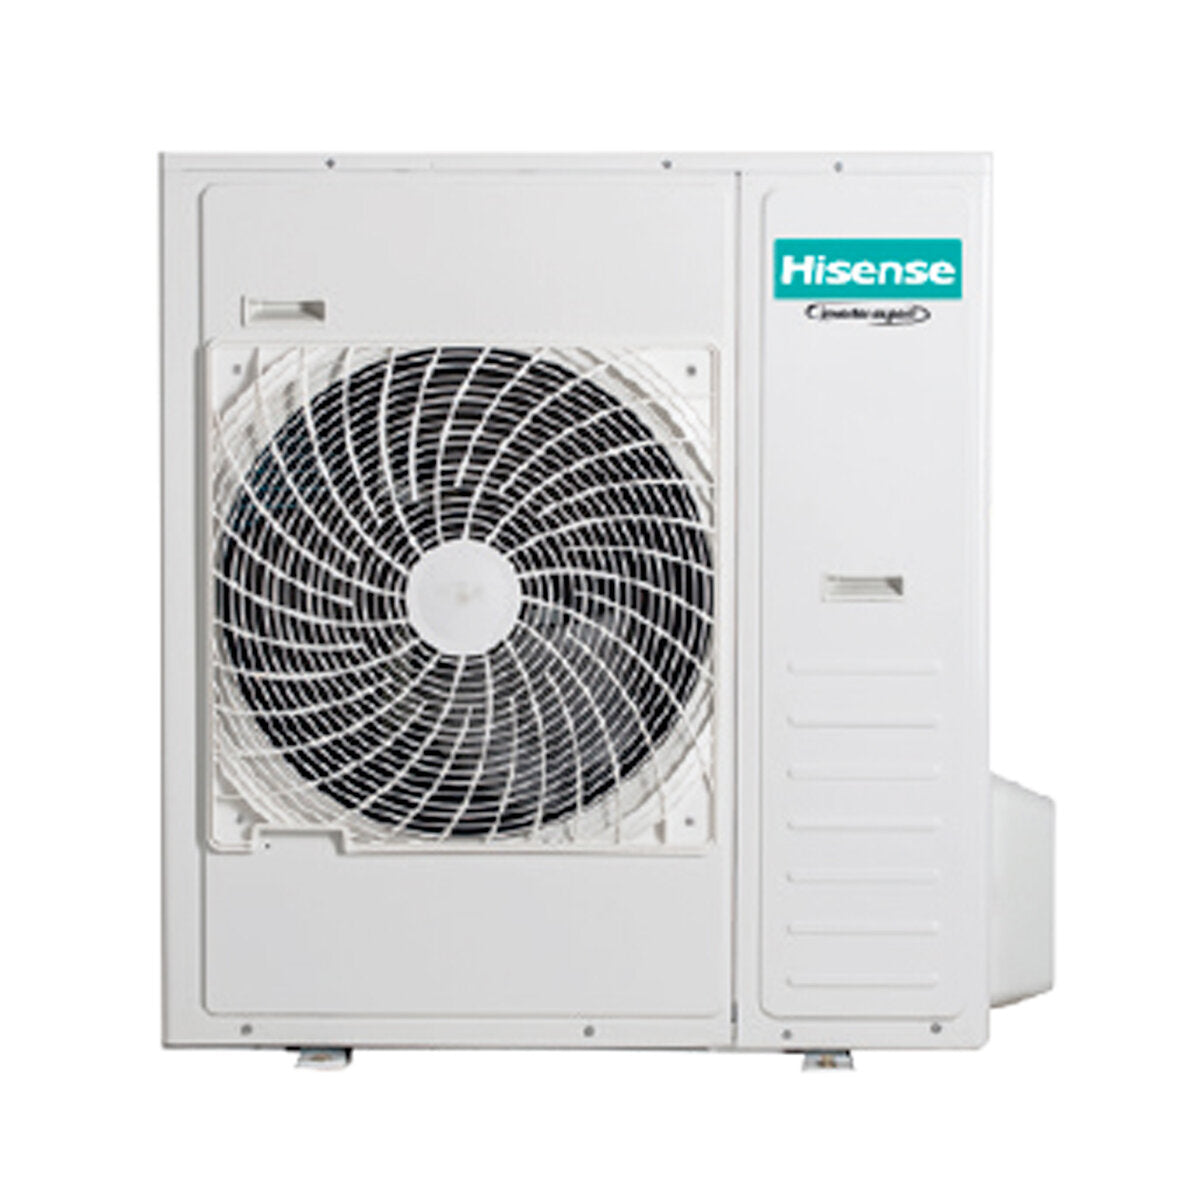 Hisense Hi-Comfort quadri split air conditioner 7000 + 12000 + 12000 + 24000 BTU wifi inverter outdoor unit 12.5 kW